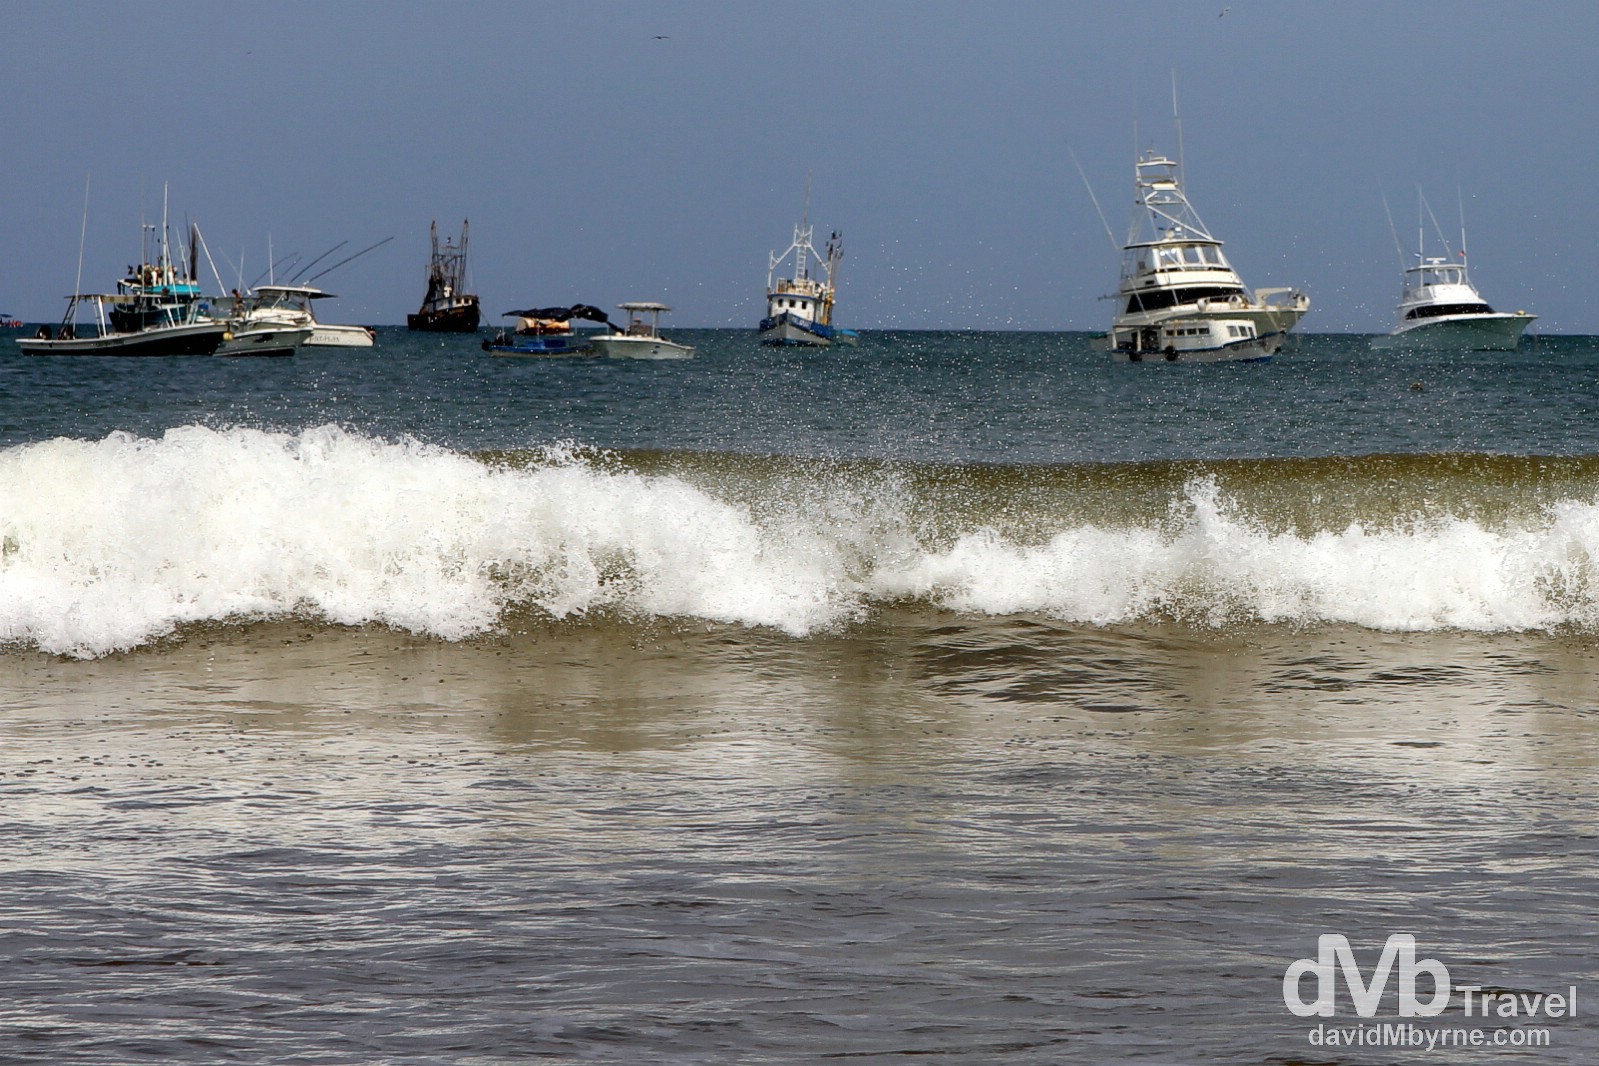 ’Boats in repose’. San Juan Del Sur, Nicaragua. June 22nd 2013.